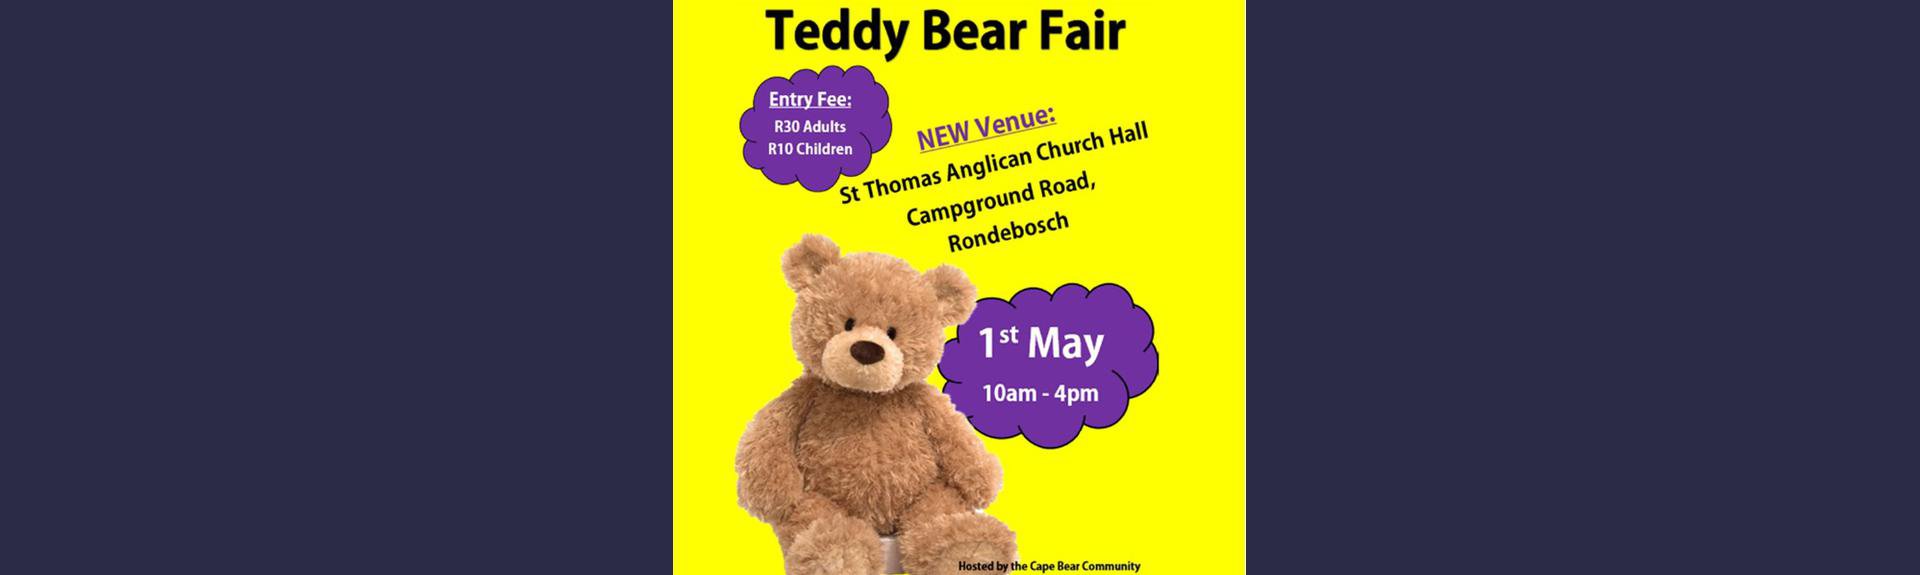 Teddy Bear Fair